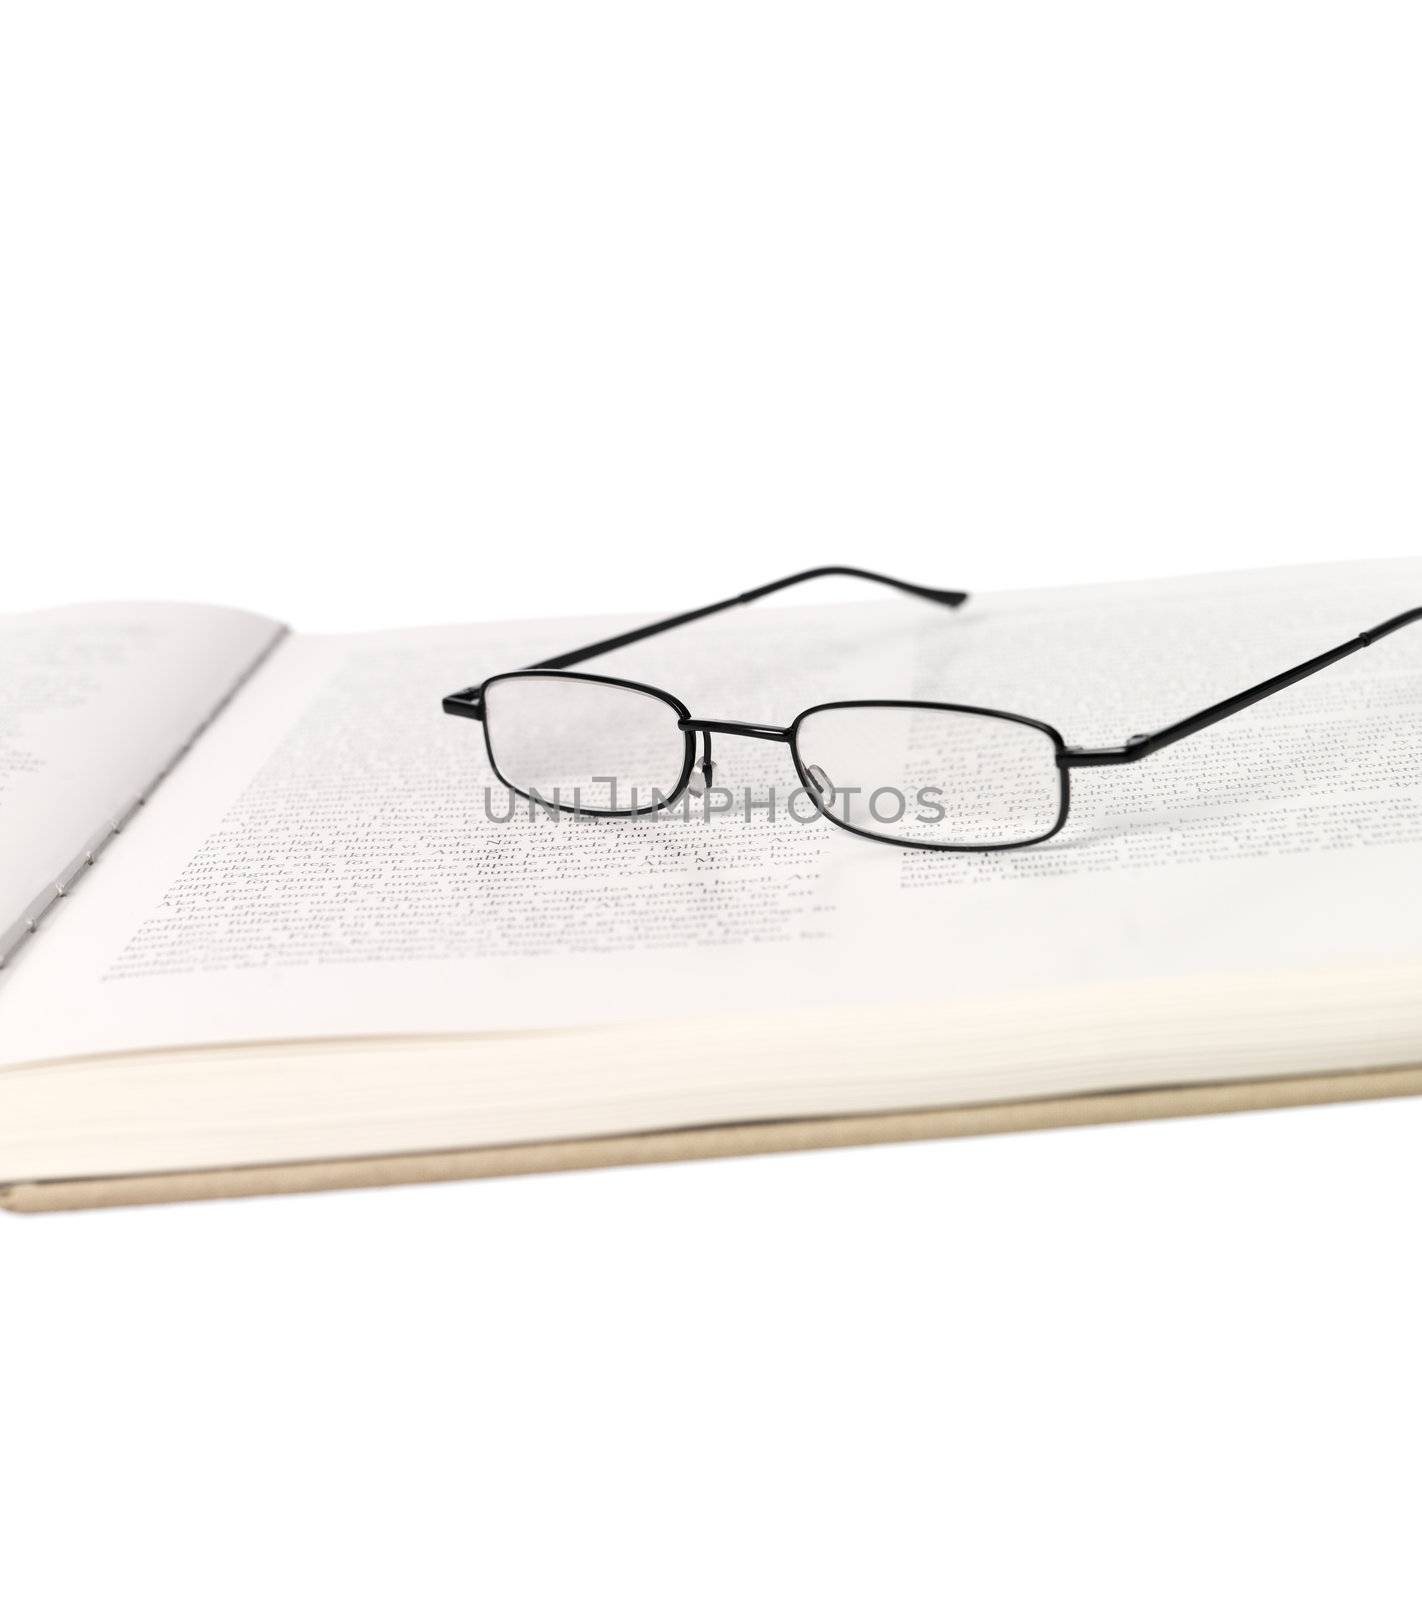 Reading-glasses in a spread book